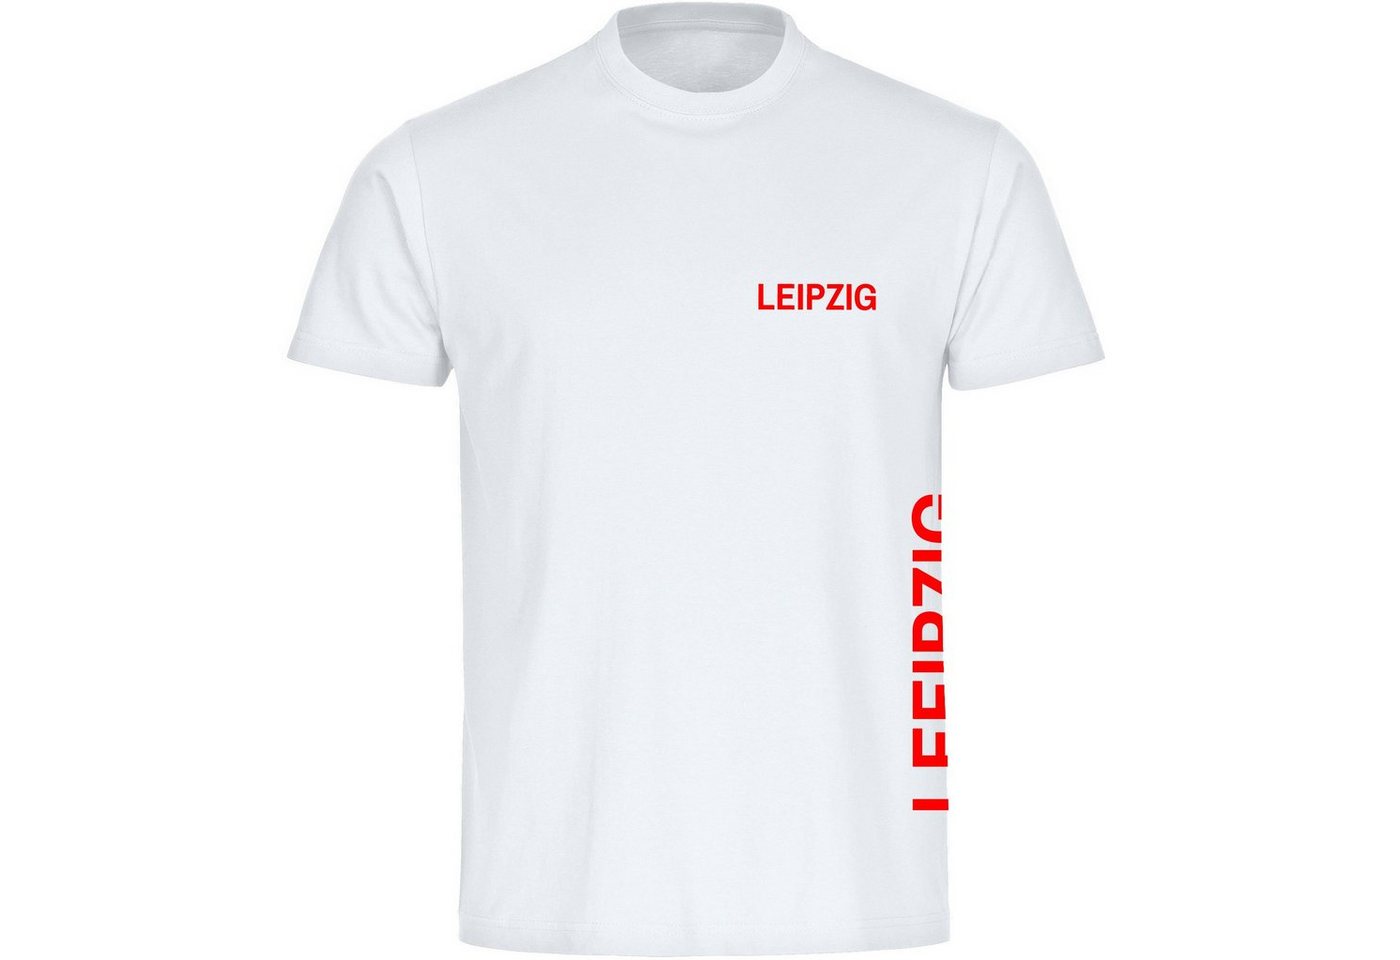 multifanshop T-Shirt Herren Leipzig - Brust & Seite - Männer von multifanshop